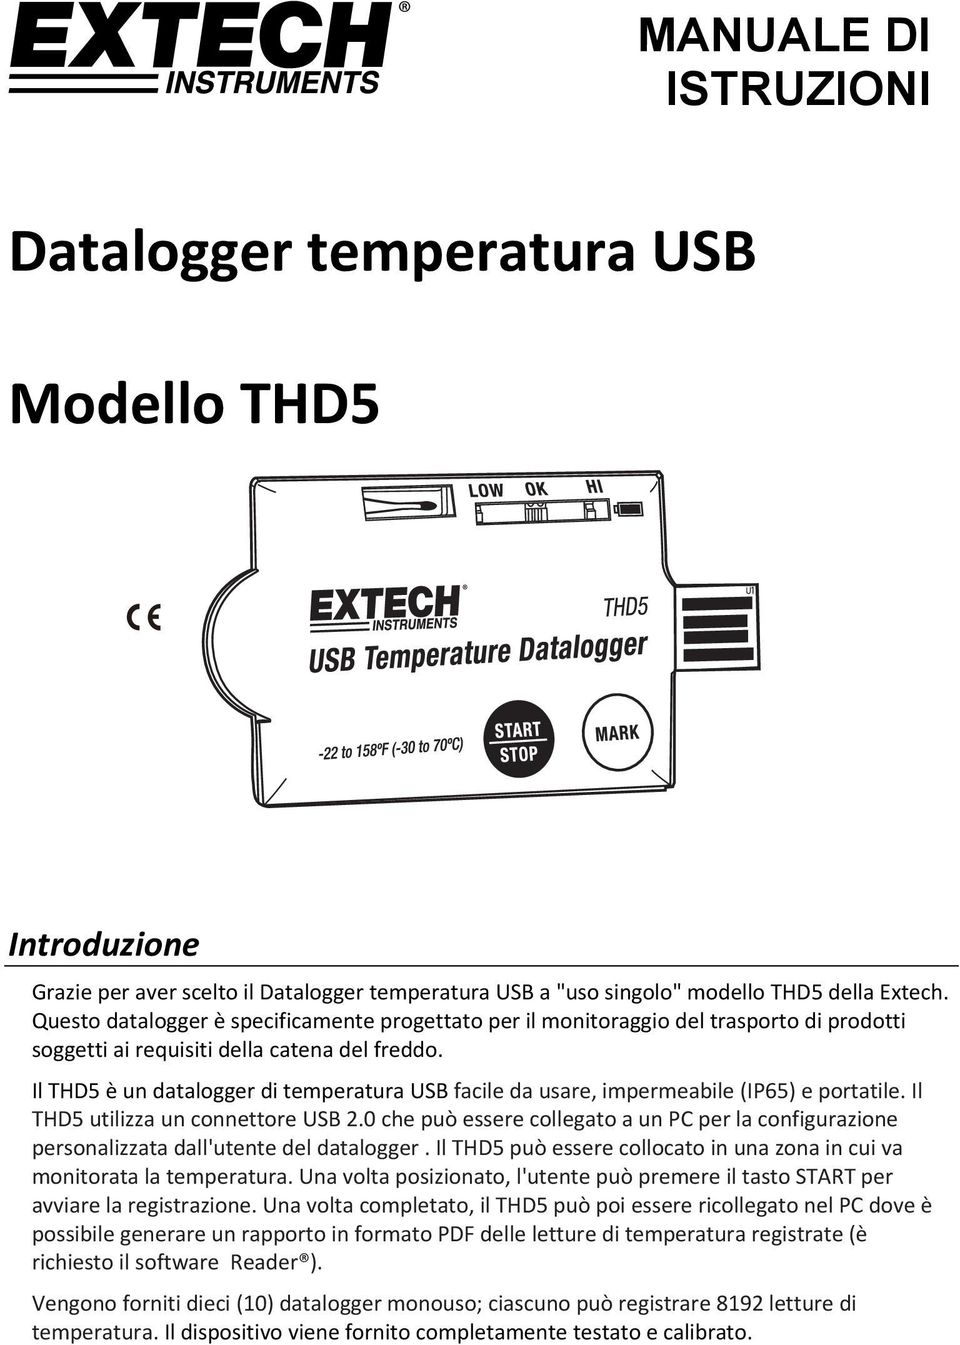 Il THD5 è un datalogger di temperatura USB facile da usare, impermeabile (IP65) e portatile. Il THD5 utilizza un connettore USB 2.